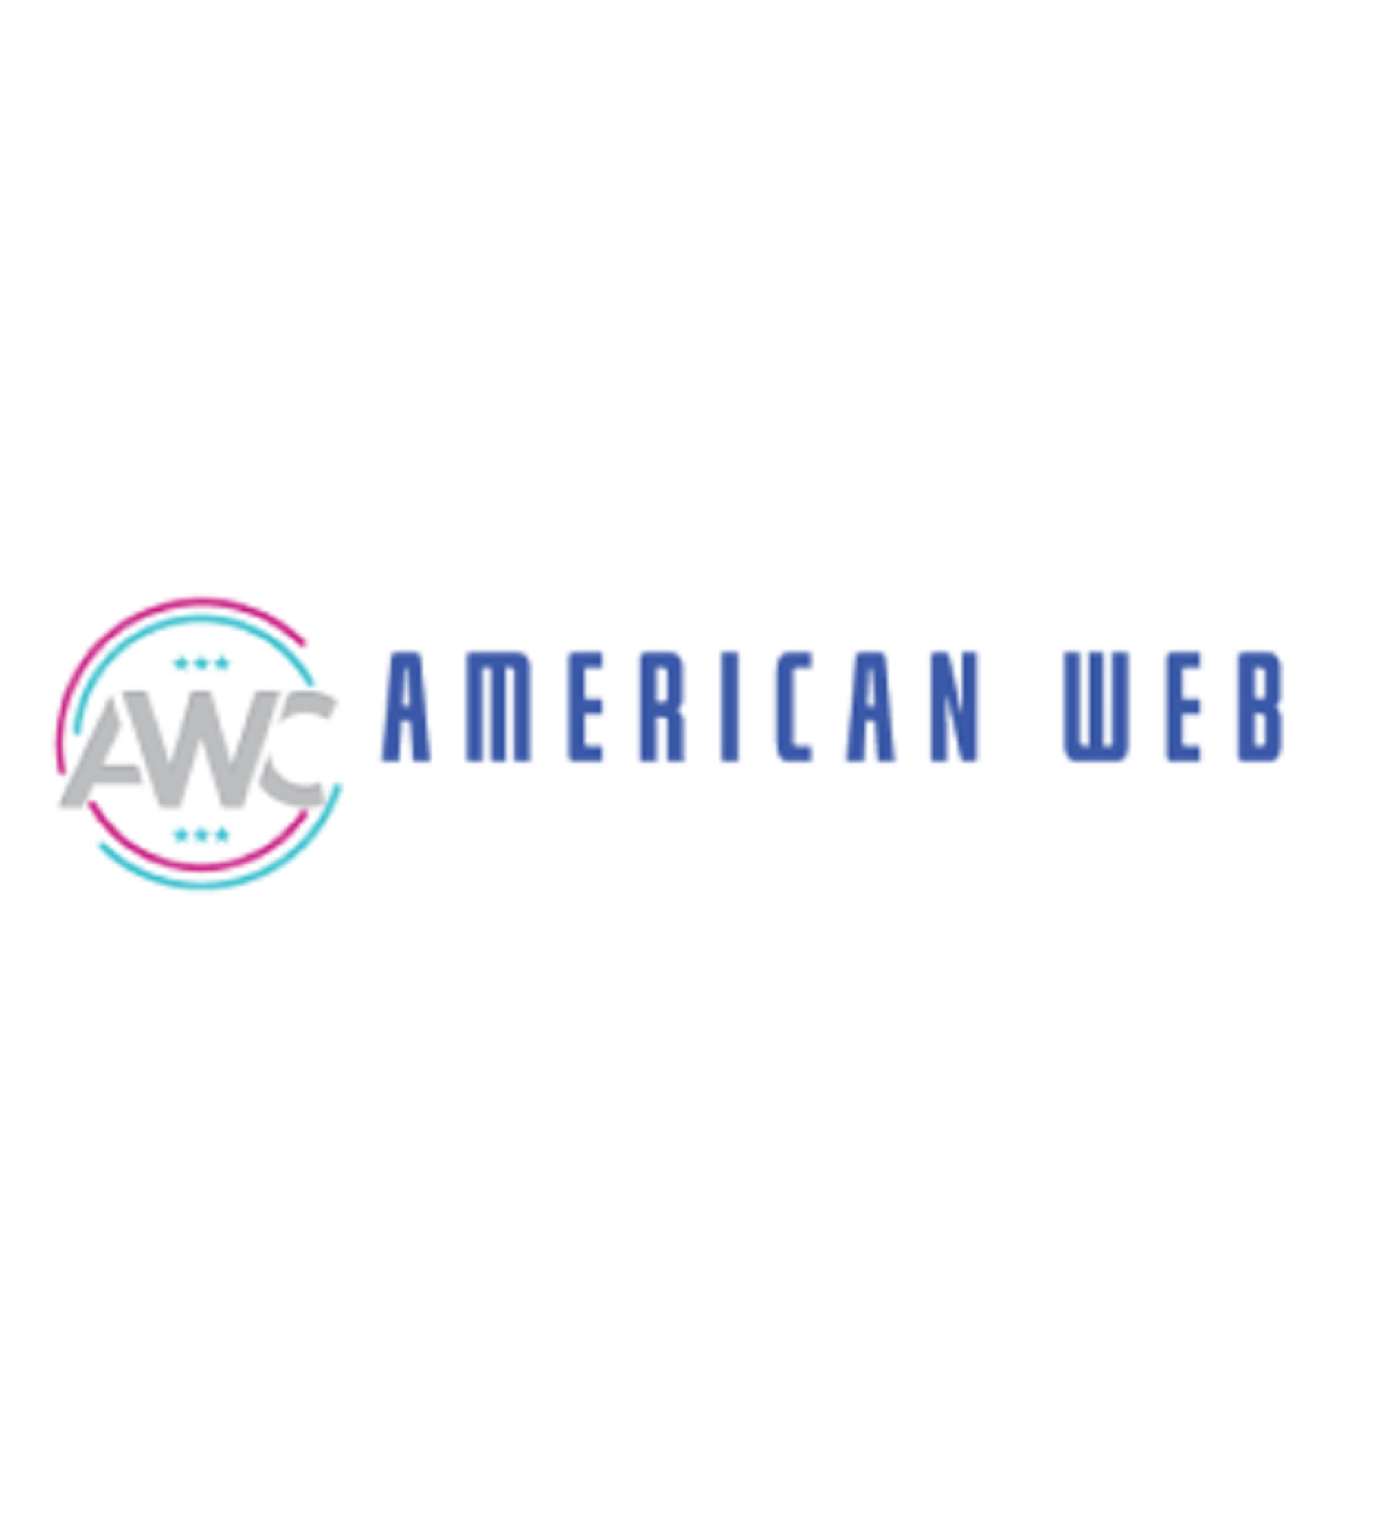 AMERICAN WEB CODERS